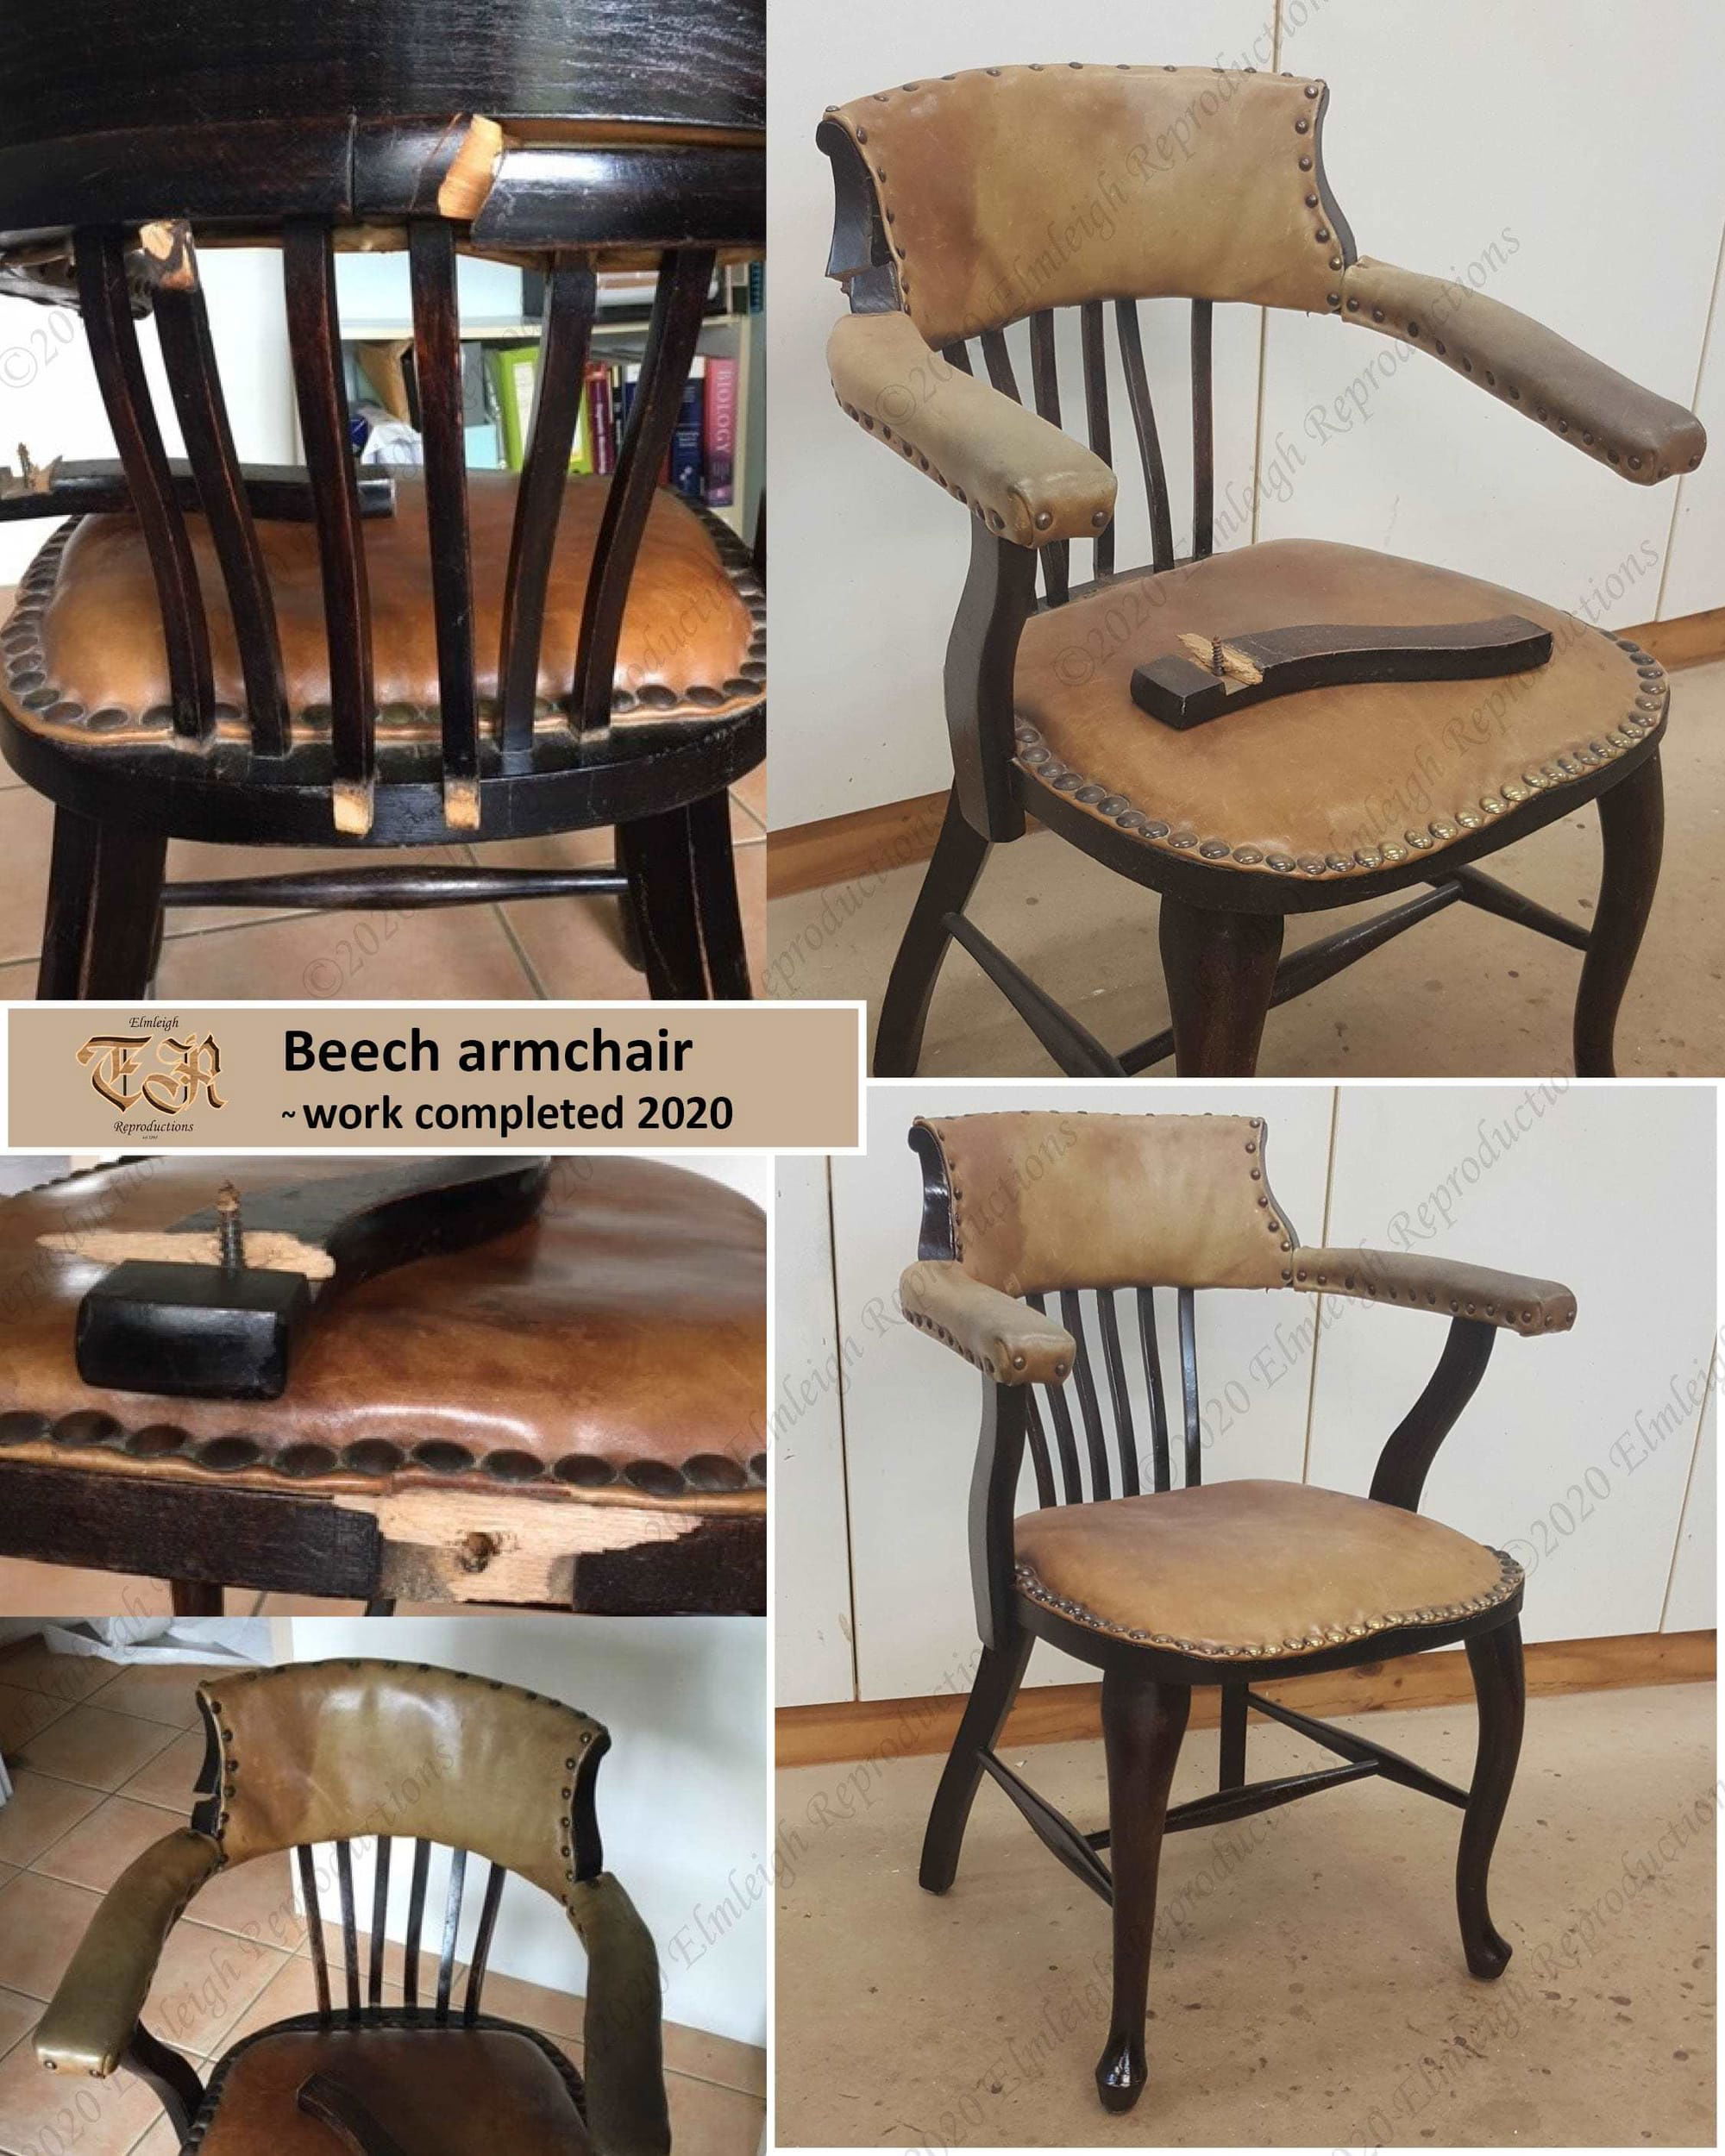 Beech armchair